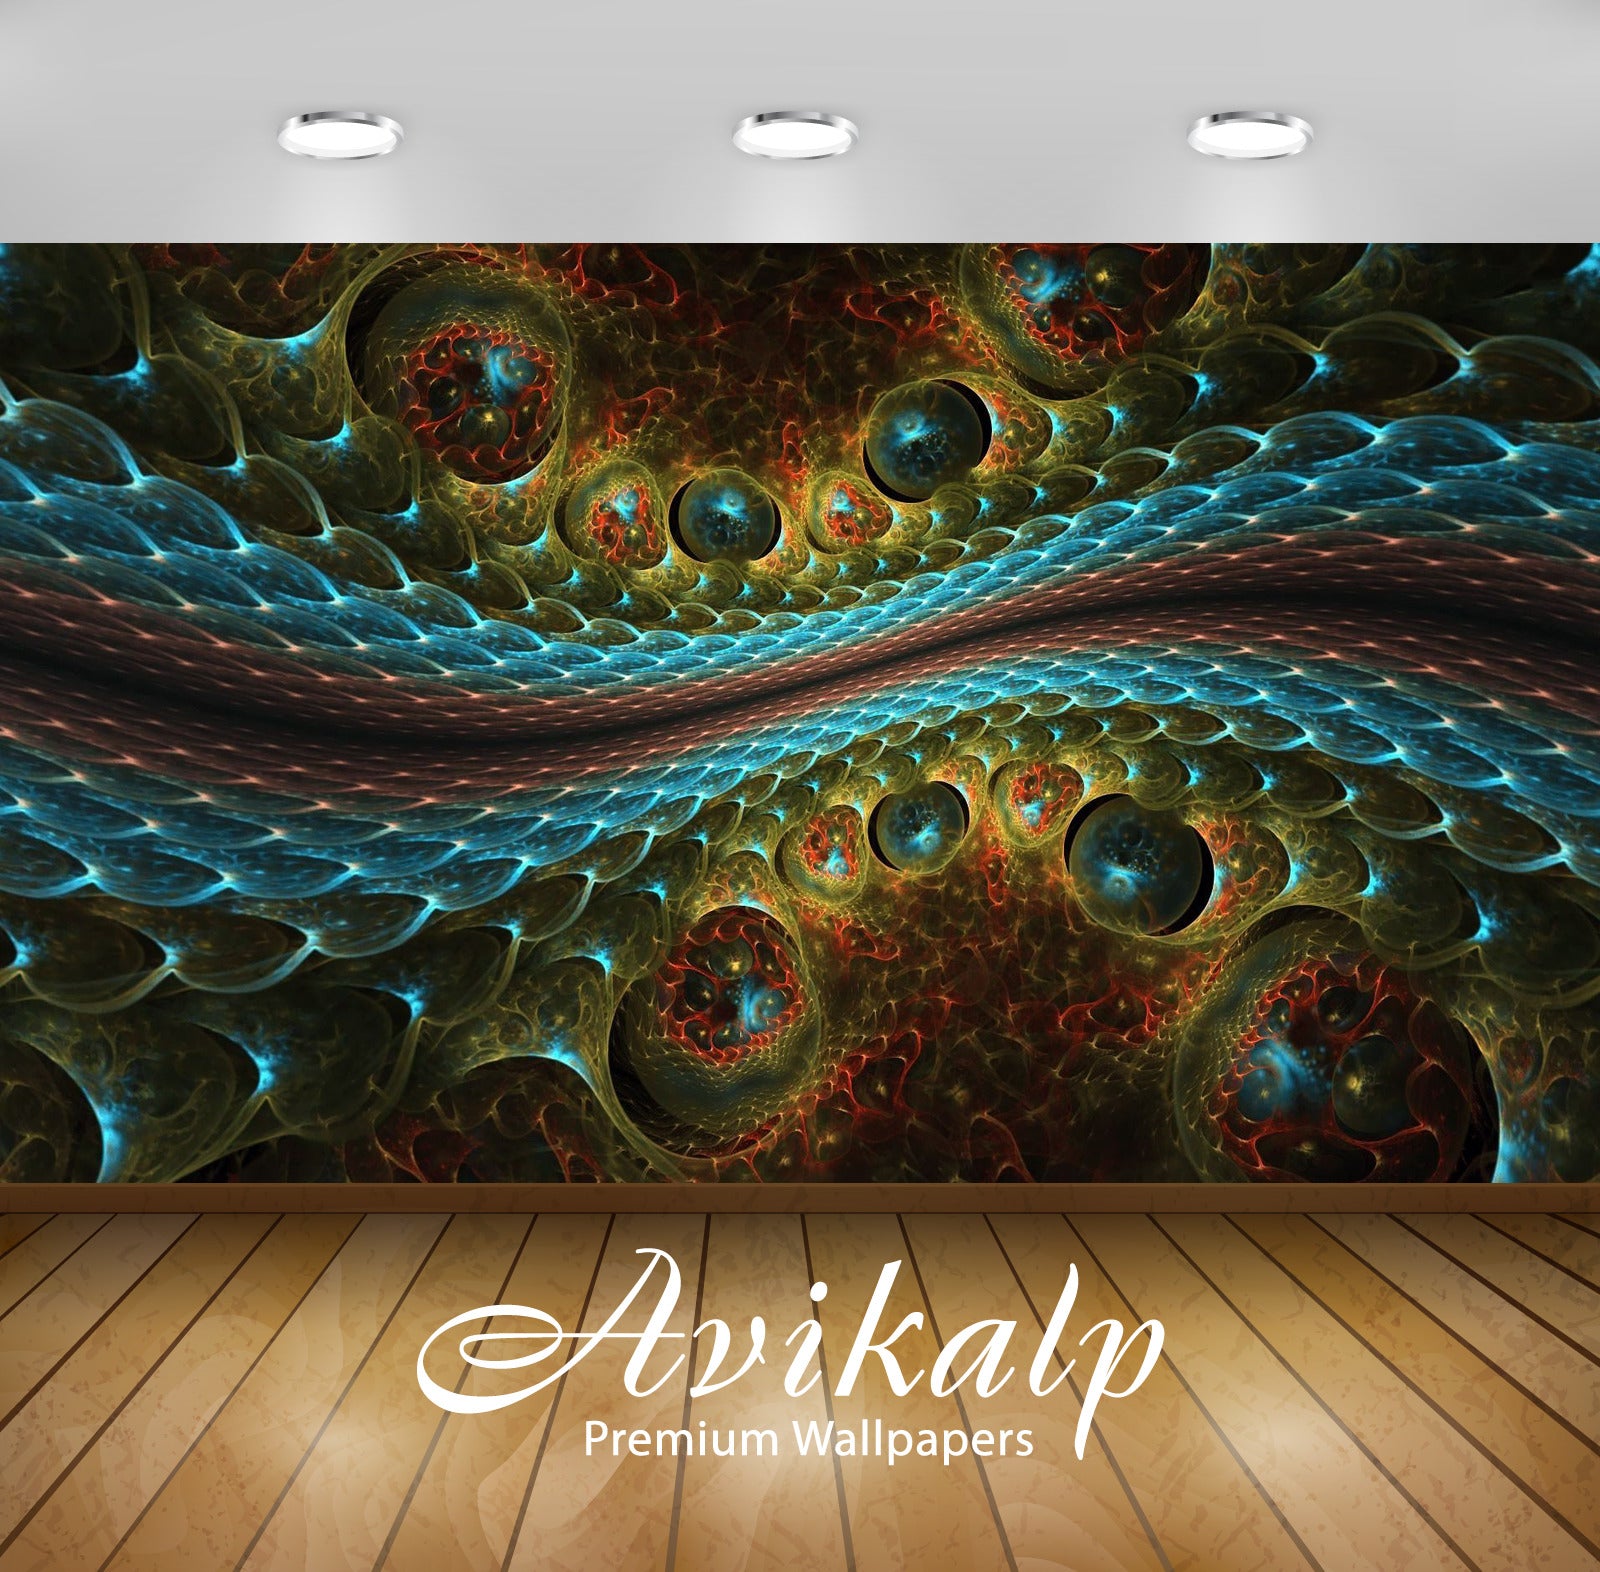 Avikalp Exclusive Awi4400 Fractal Snake Skin Full HD Wallpapers for Living room, Hall, Kids Room, Ki